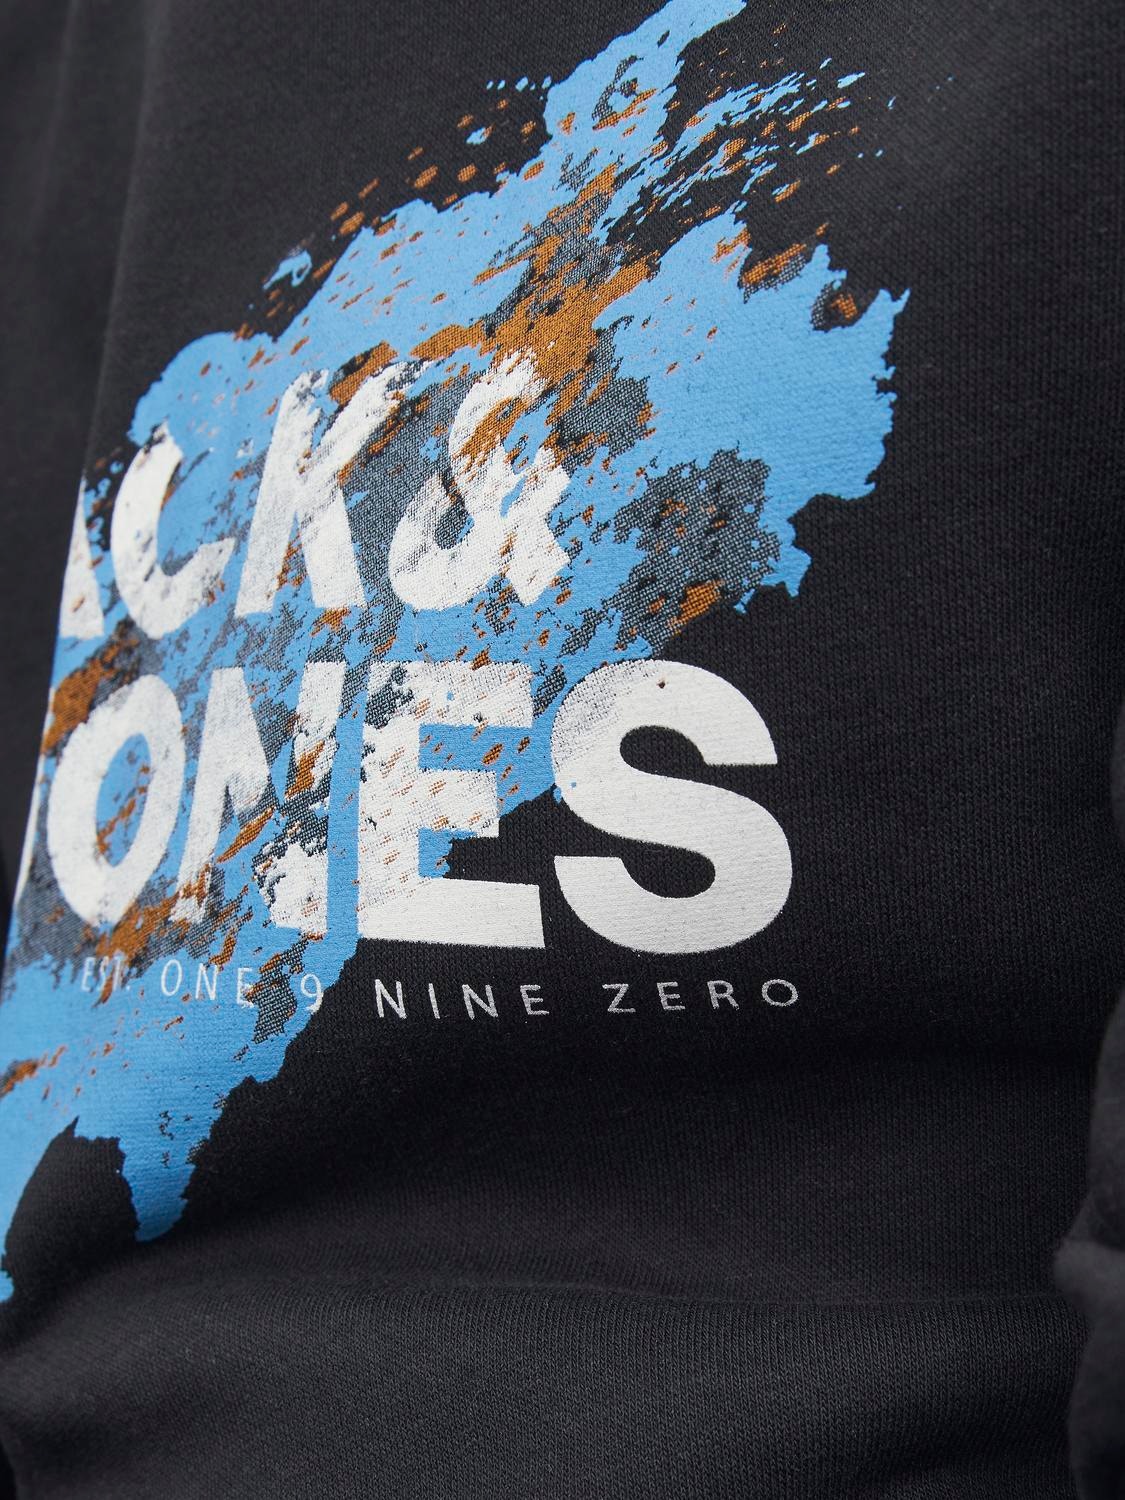 Jack & Jones Logo Kapuzenpullover Für jungs -Black - 12237210